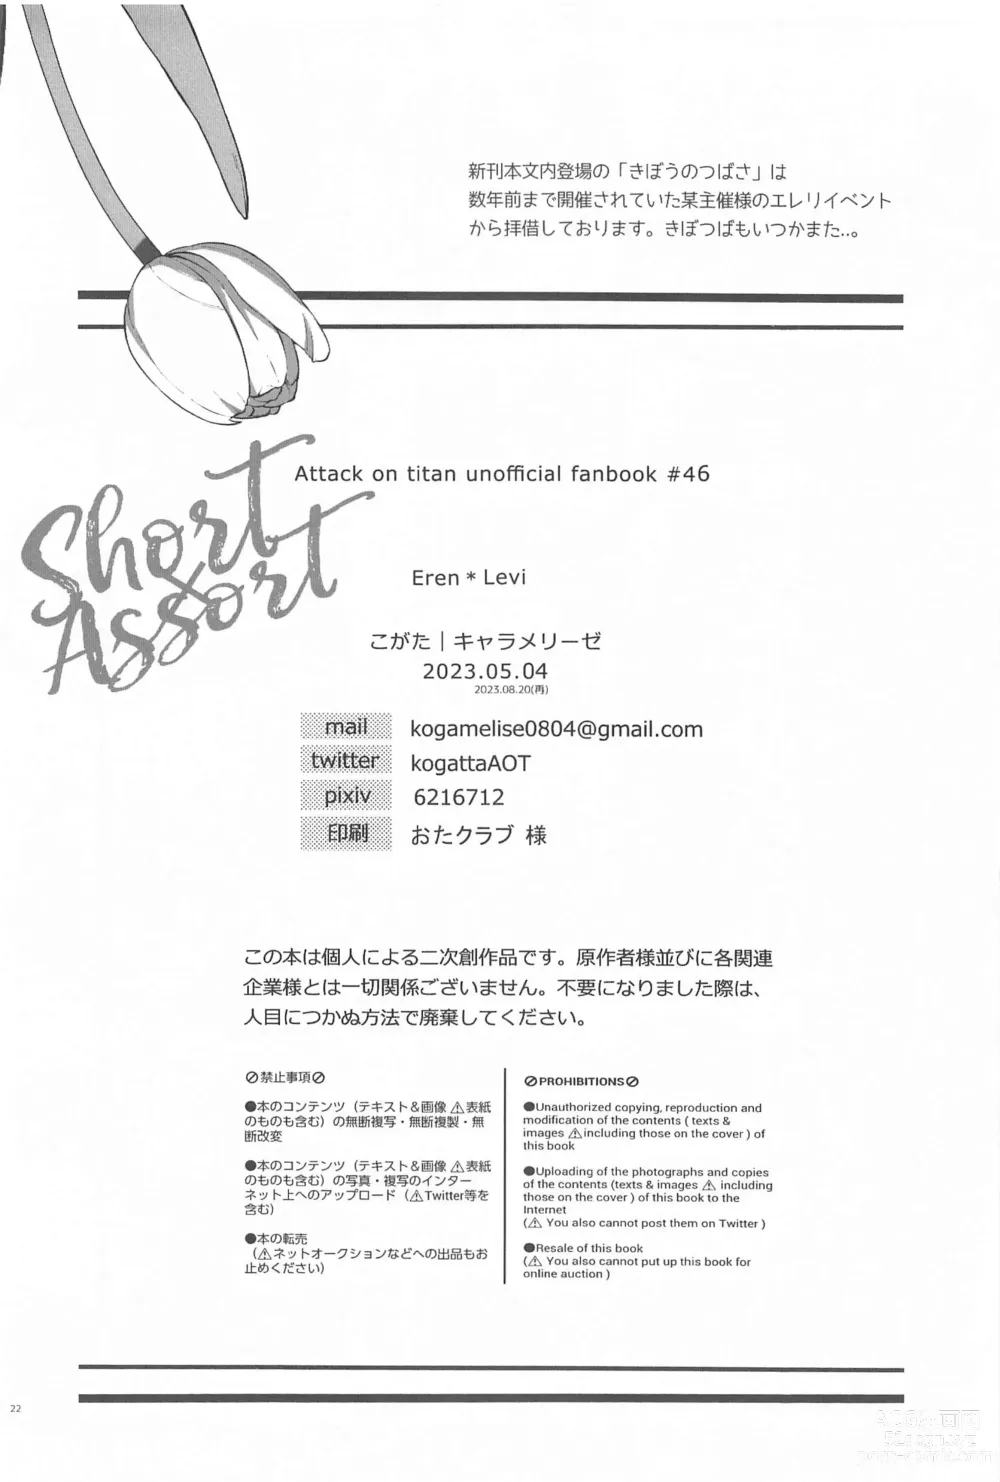 Page 21 of doujinshi Short x Assort